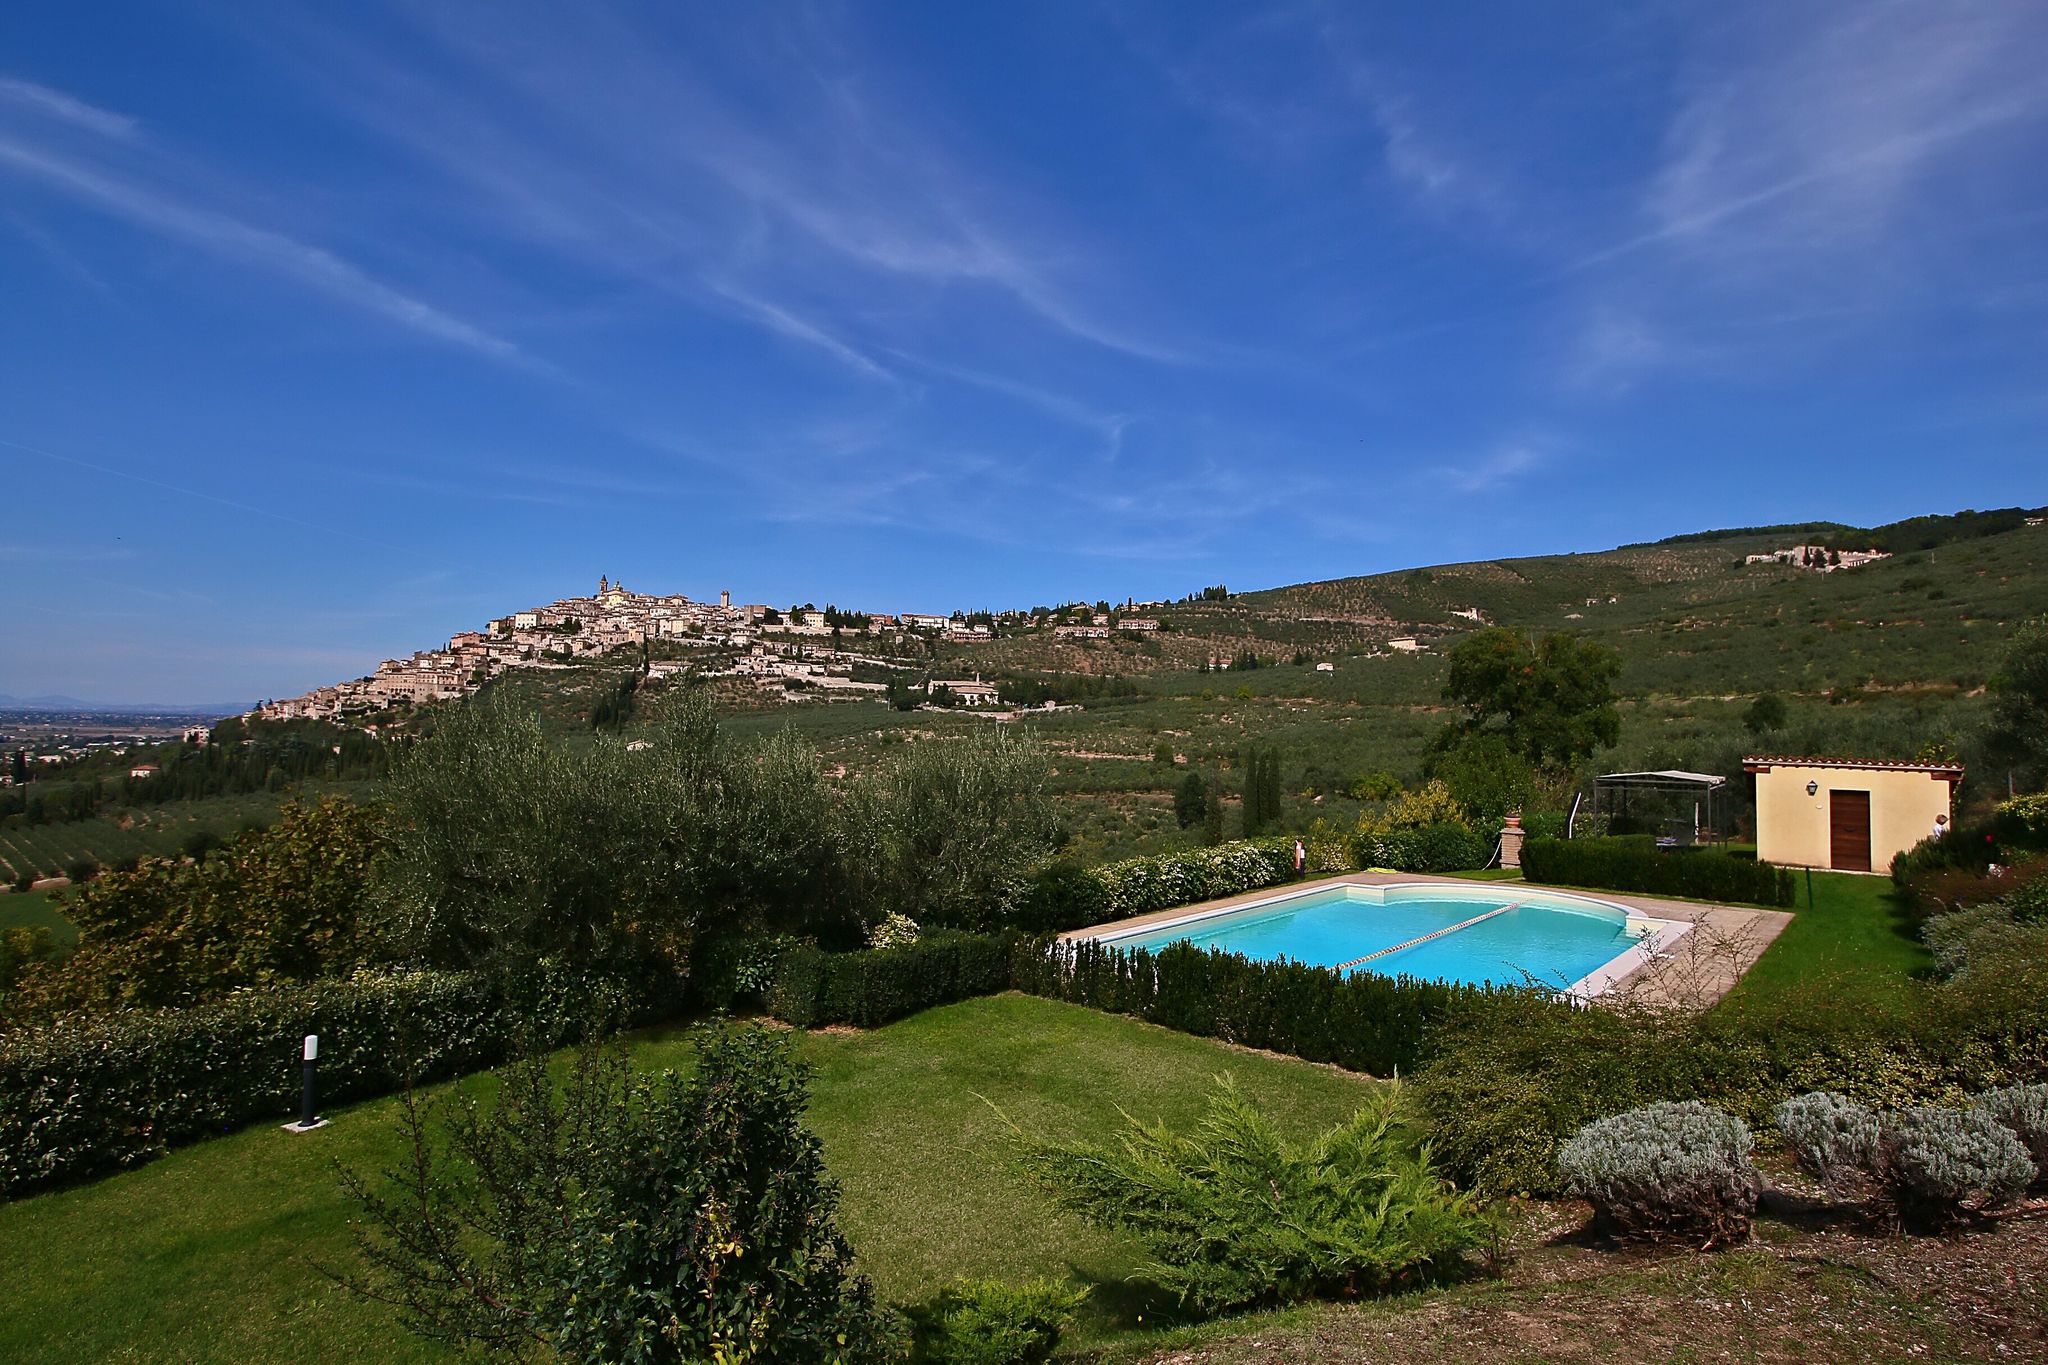 Idyllisch vakantiehuis met zwembad dicht bij Trevi